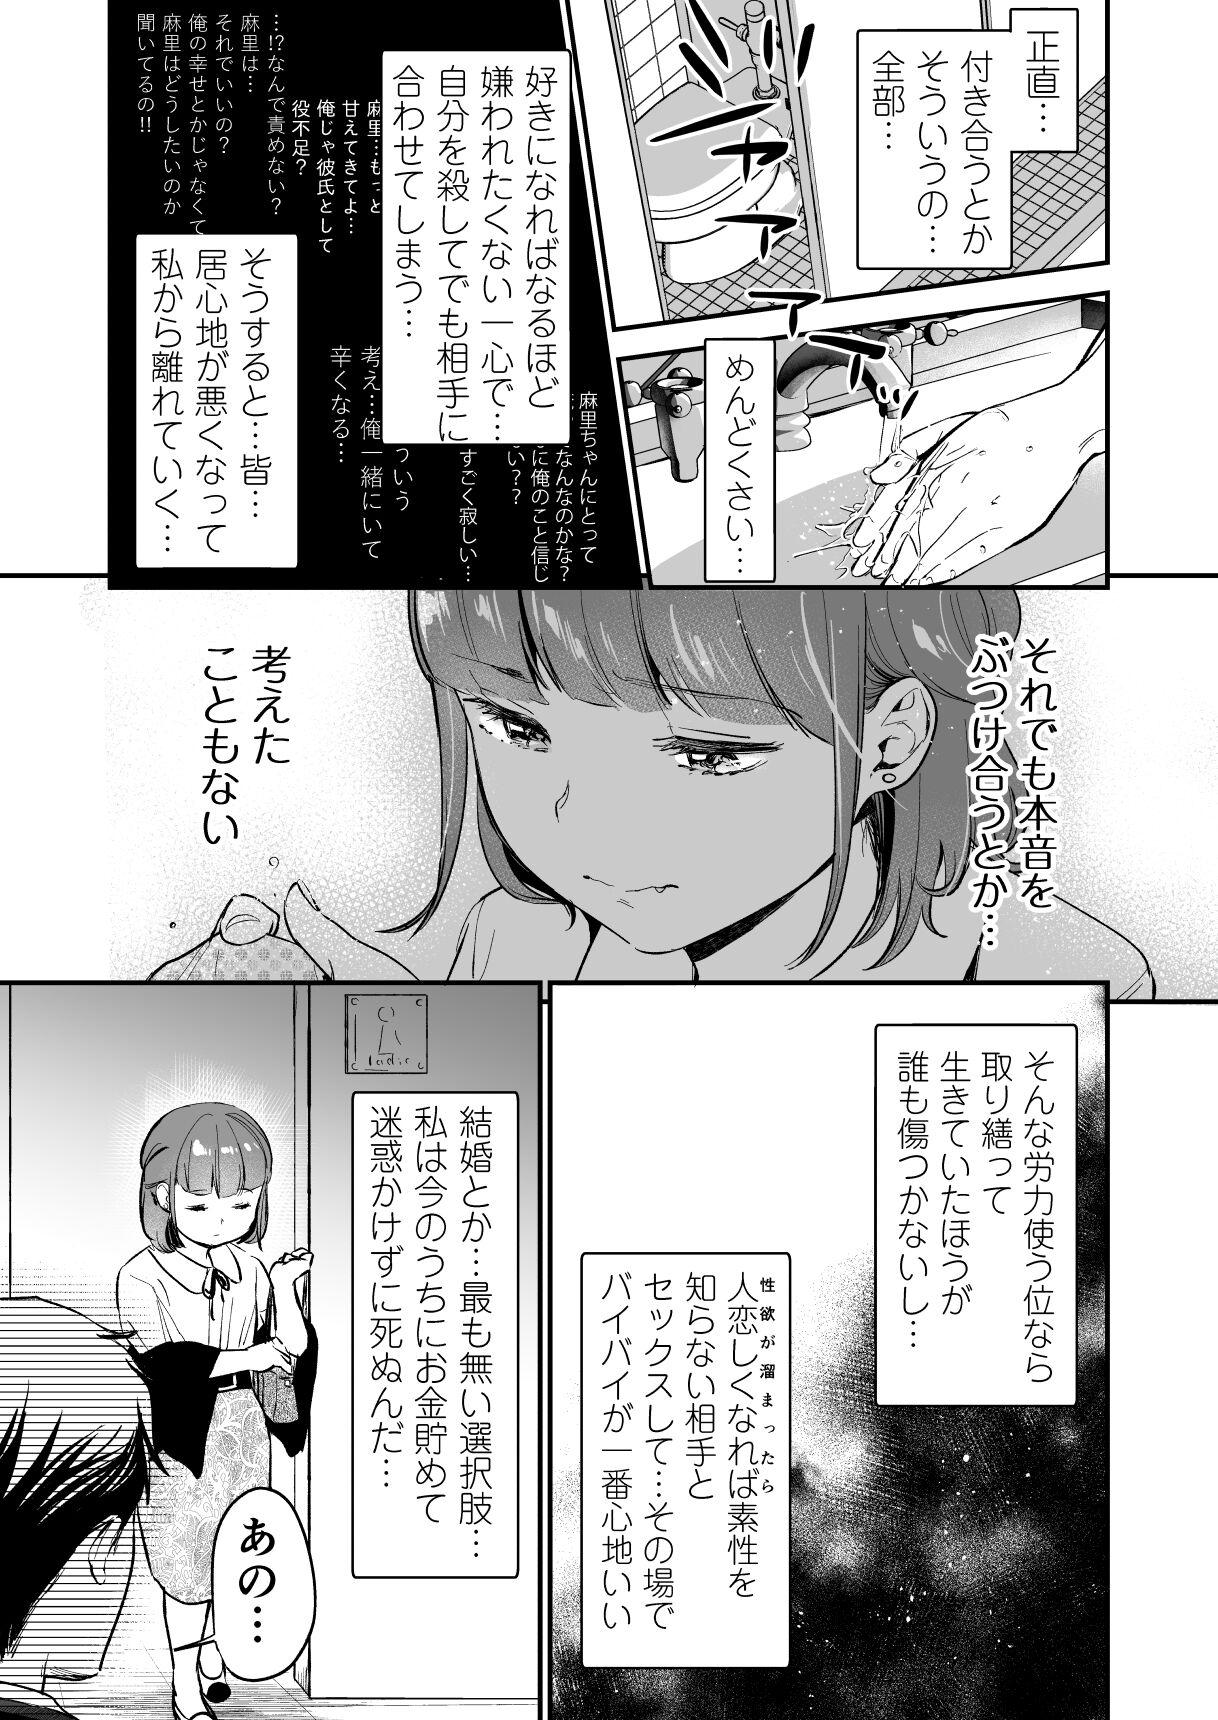 Anale Chīsana nikushoku-jū wa ōkina chi ● po de haramita gatte iru - Original Deflowered - Page 5